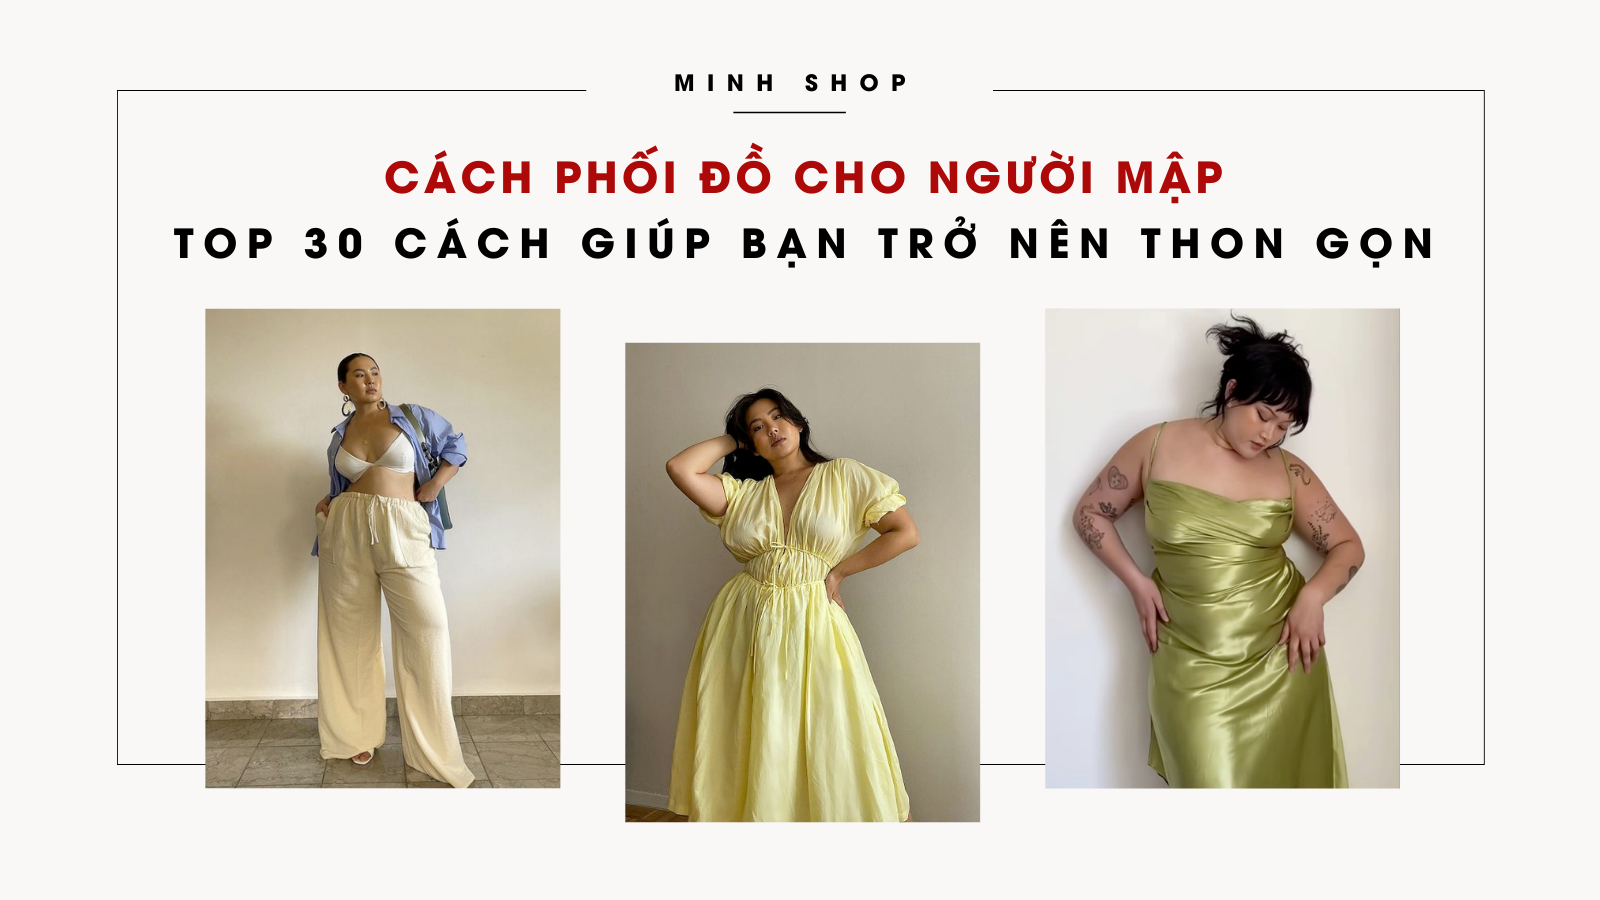 cach-phoi-do-cho-nguoi-map-top-30-cach-giup-ban-tro-nen-thon-gon